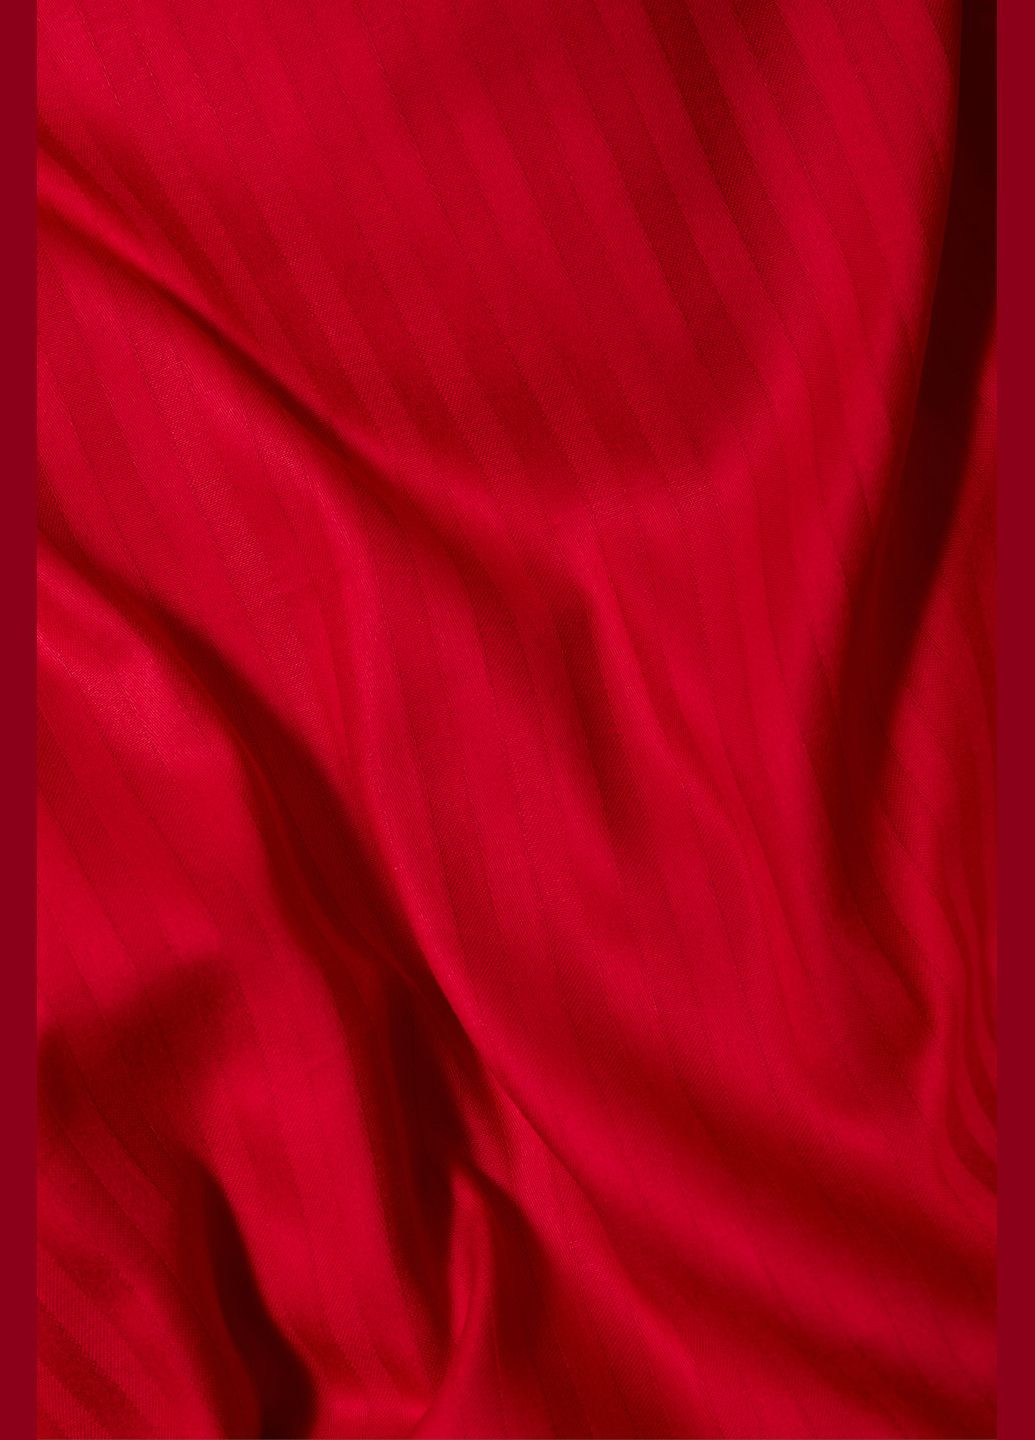 Комплект постельного белья Satin Stripe евро 200х220 наволочки 2х40х60 (MS-820003580) Moon&Star stripe red (288043346)